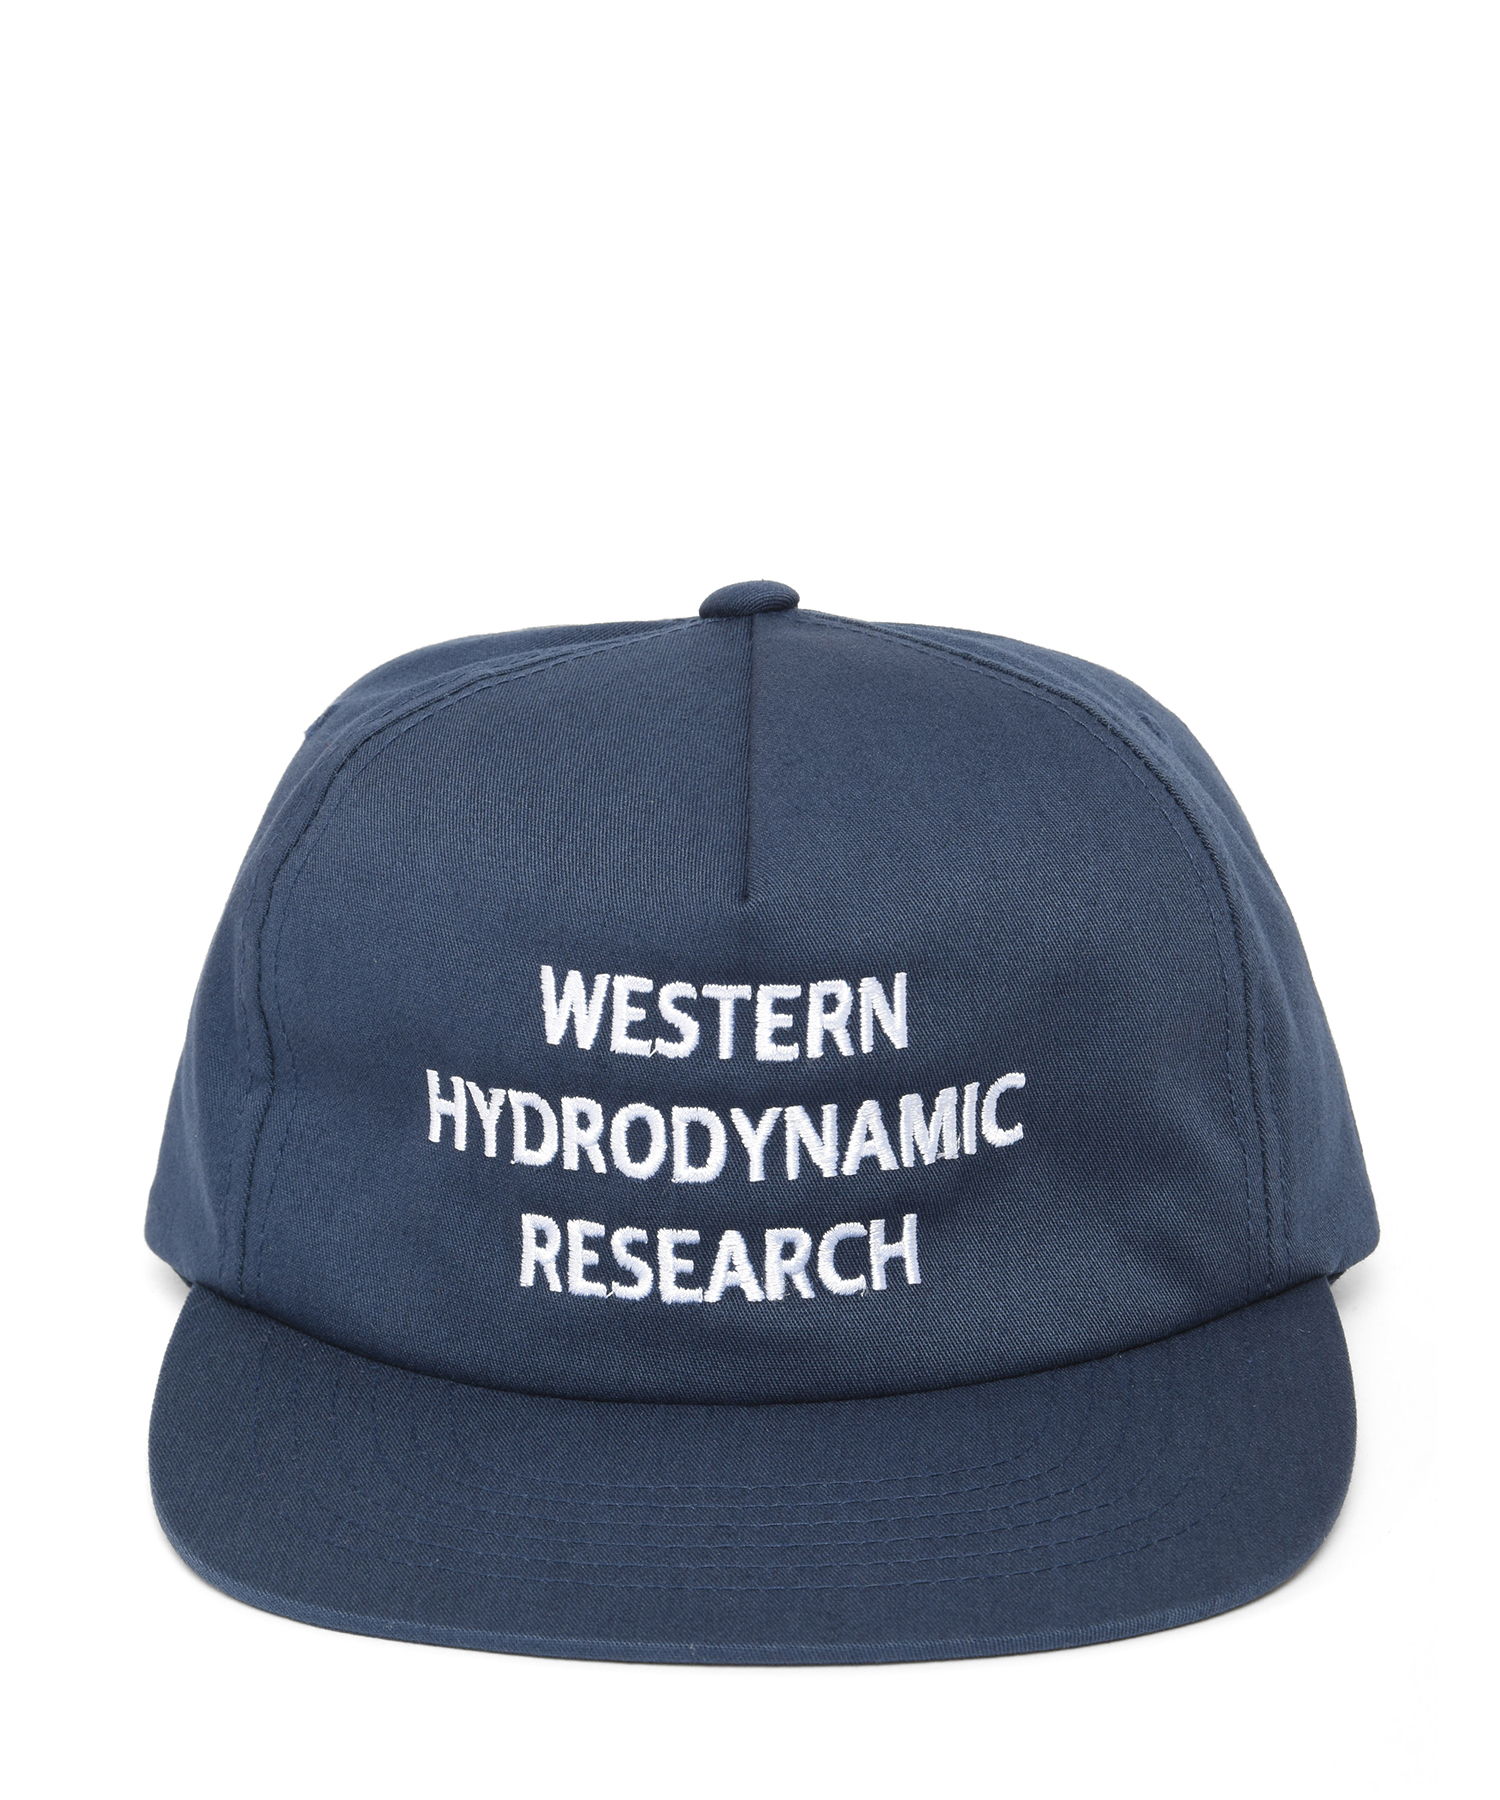 Western Hydrodynamic Research ウエスタンハイドロダイナミックリサーチ WHR 21AW Promotional Hat ロゴ刺繍6パネルキャップ MWHR21A3001-U Free NAVY 帽子【Western Hydrodynamic Research】